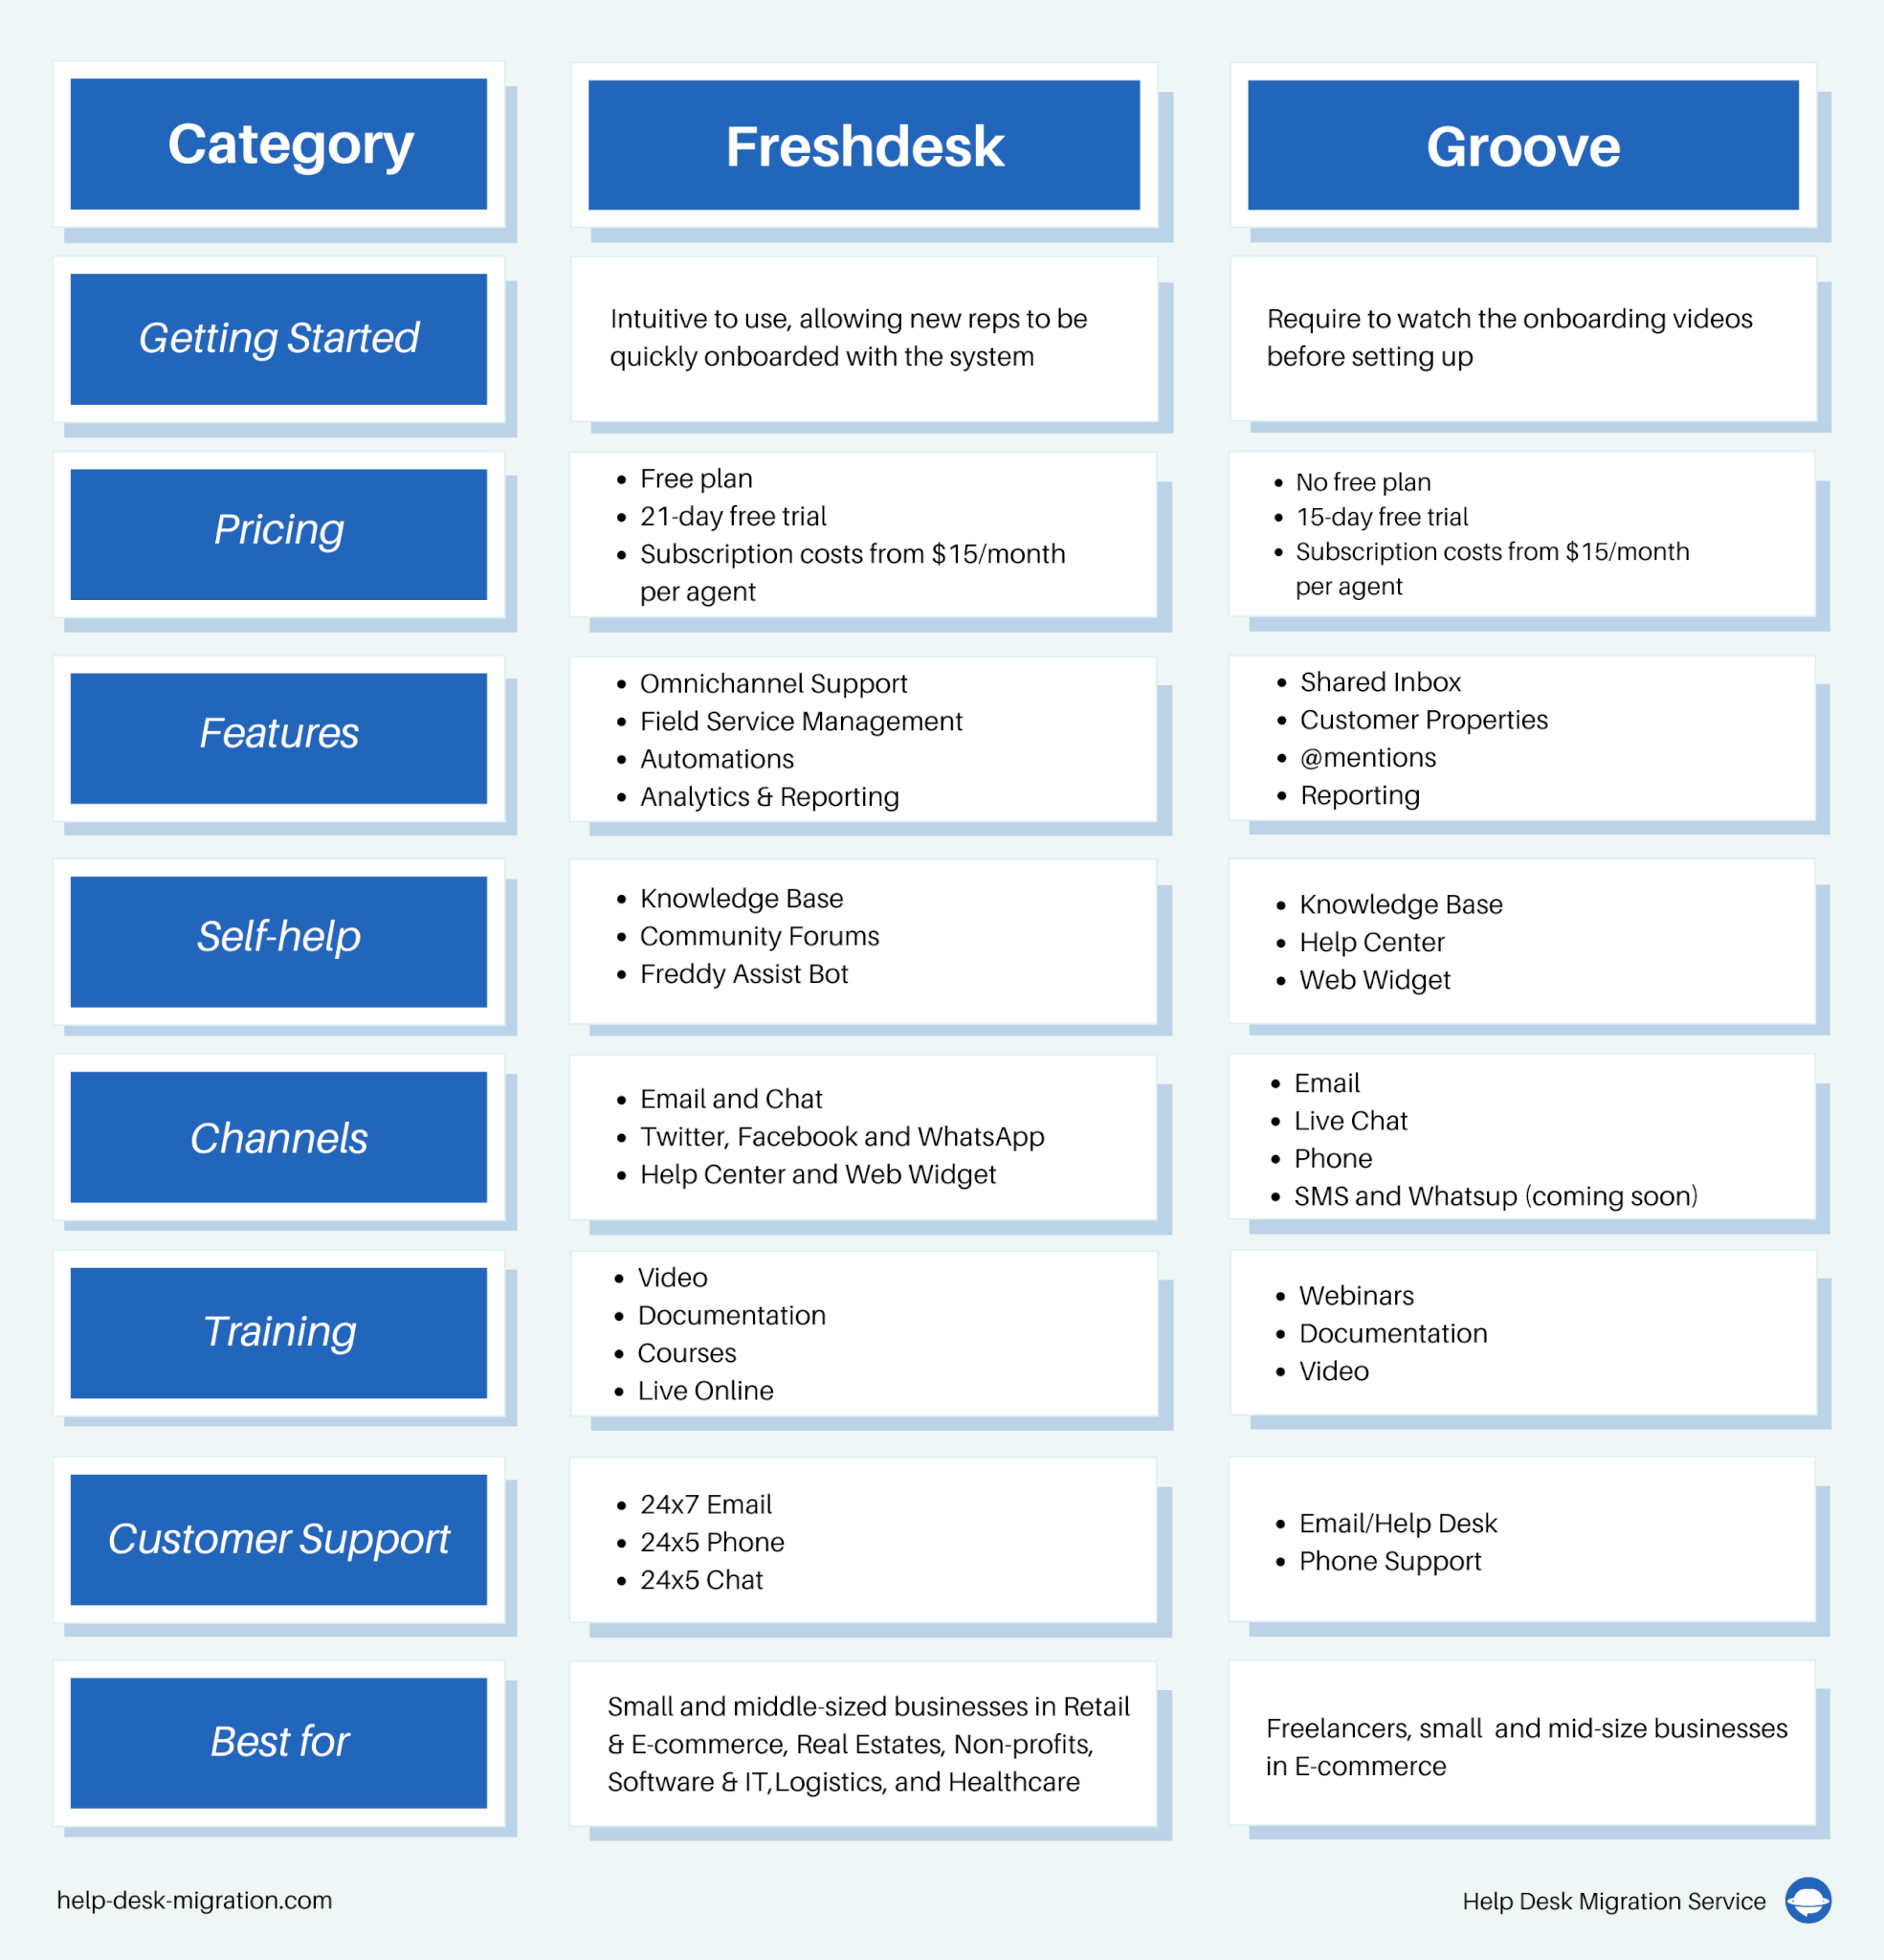 Freshdesk vs Groove